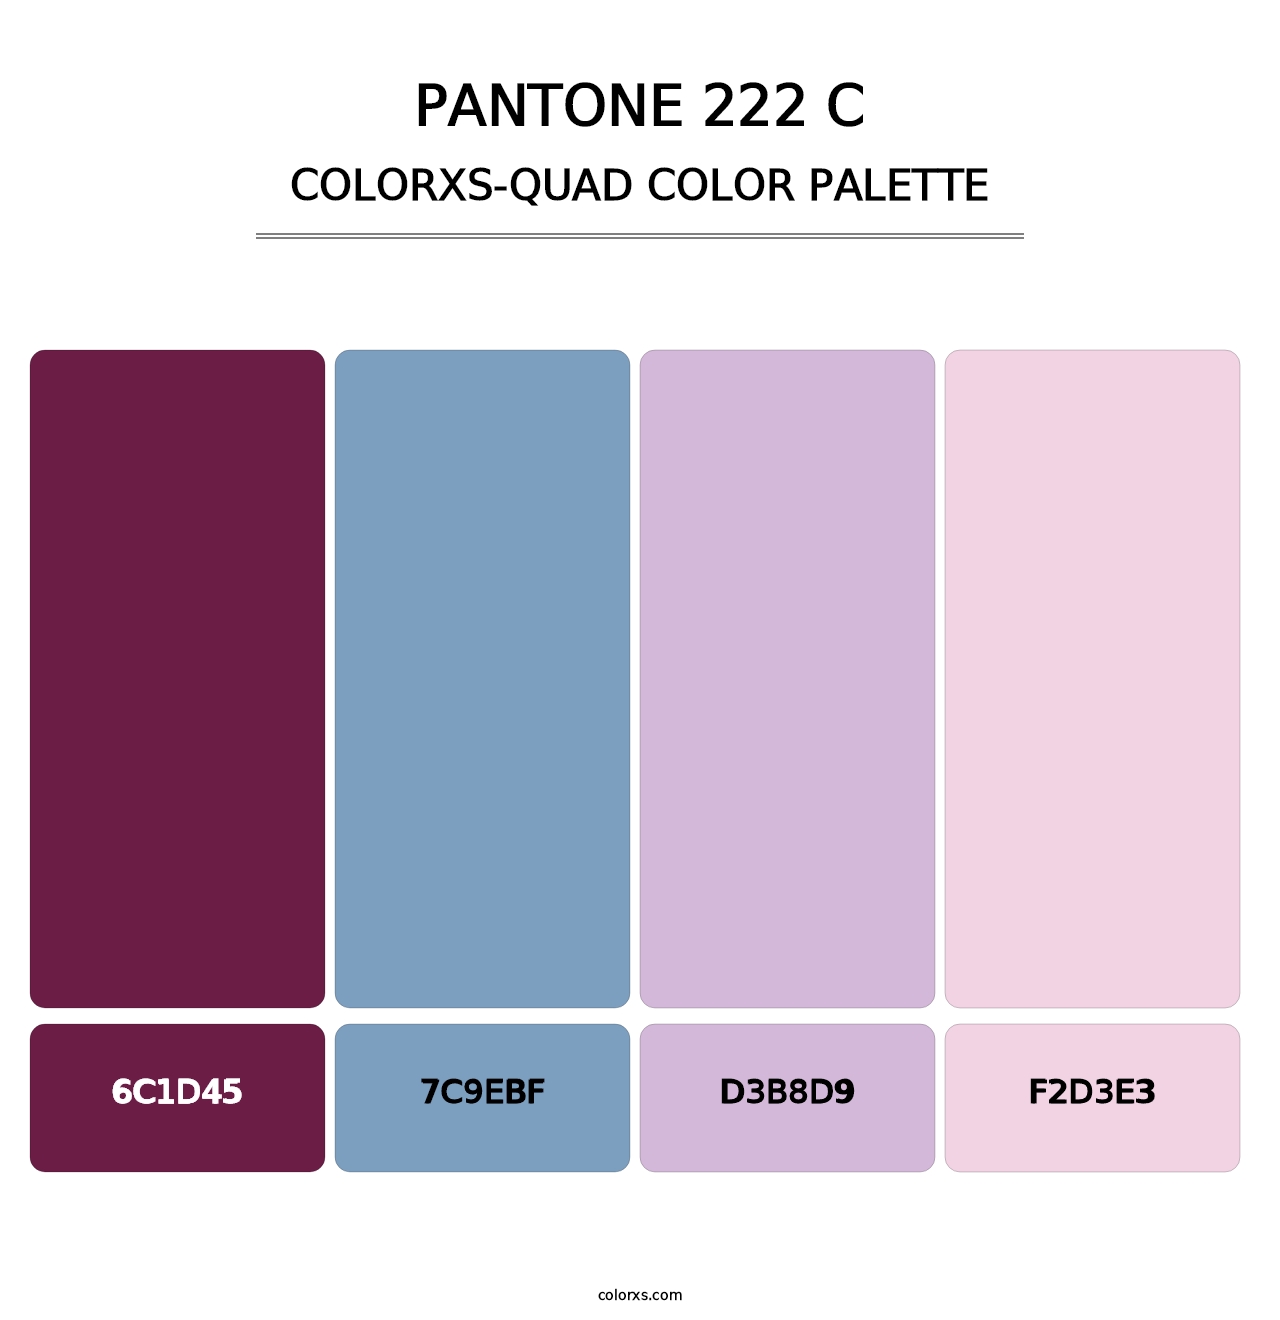 PANTONE 222 C - Colorxs Quad Palette